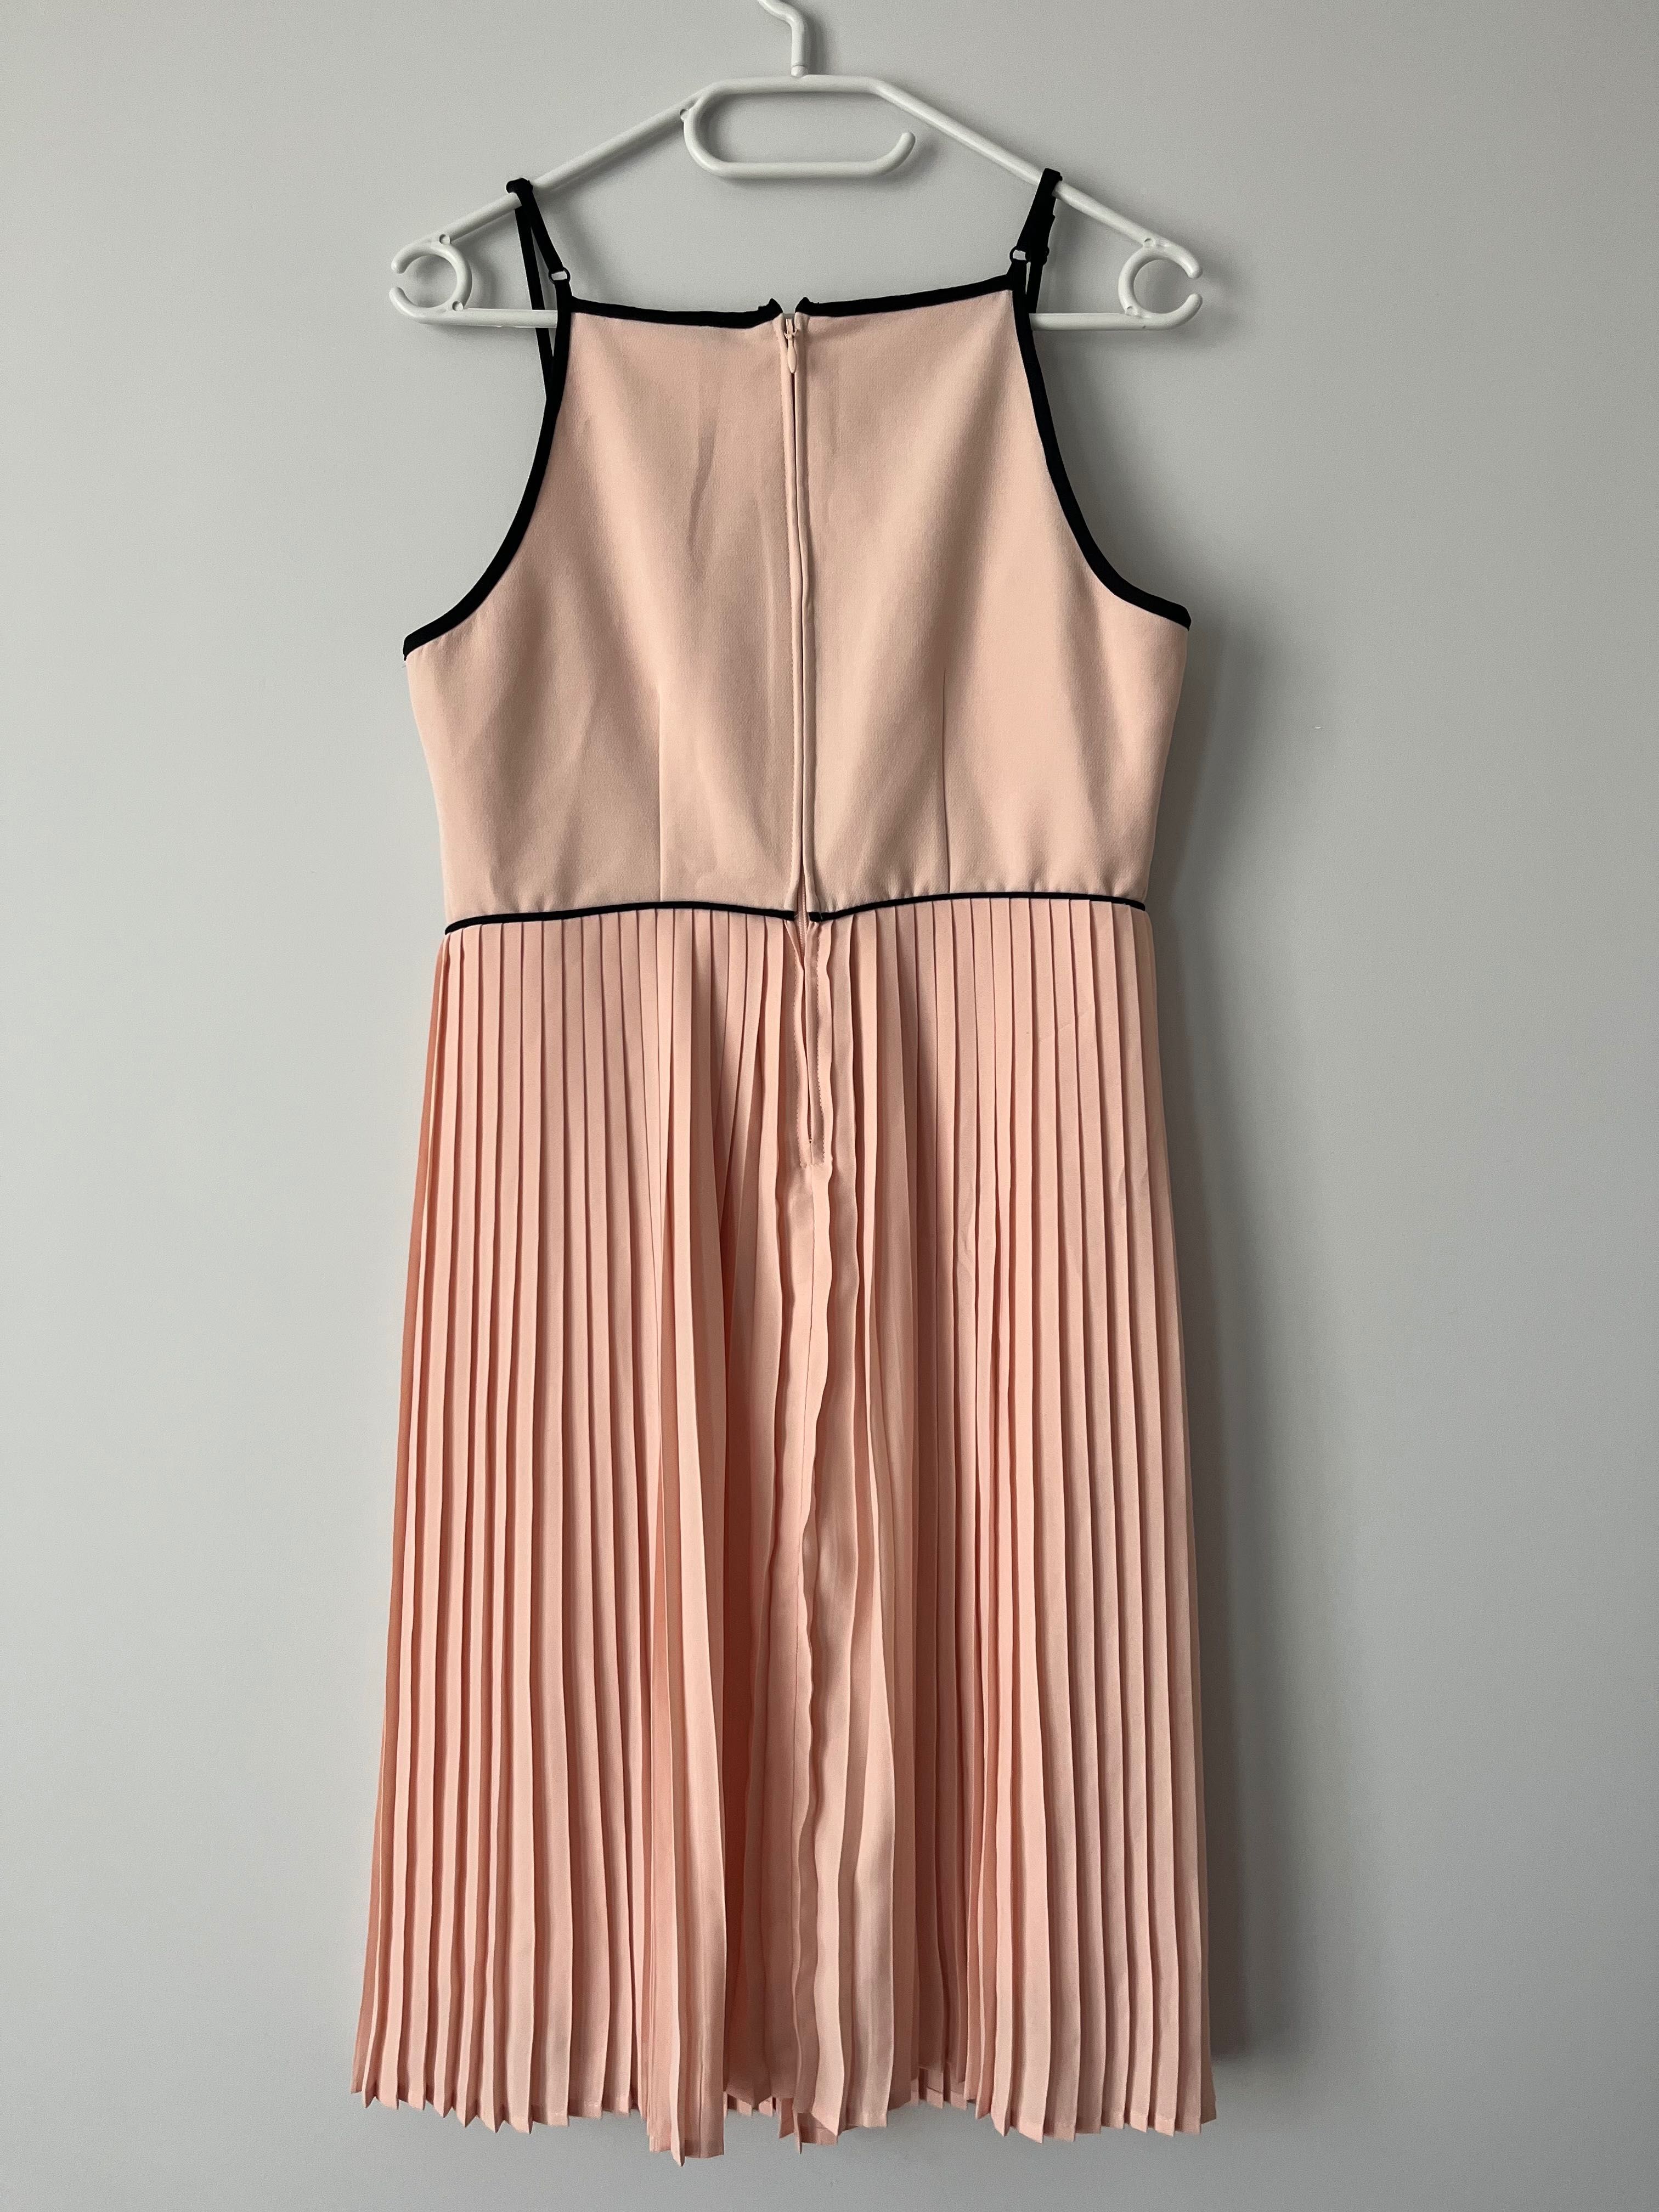 Sukienka Orsay 36-38 rozmiar